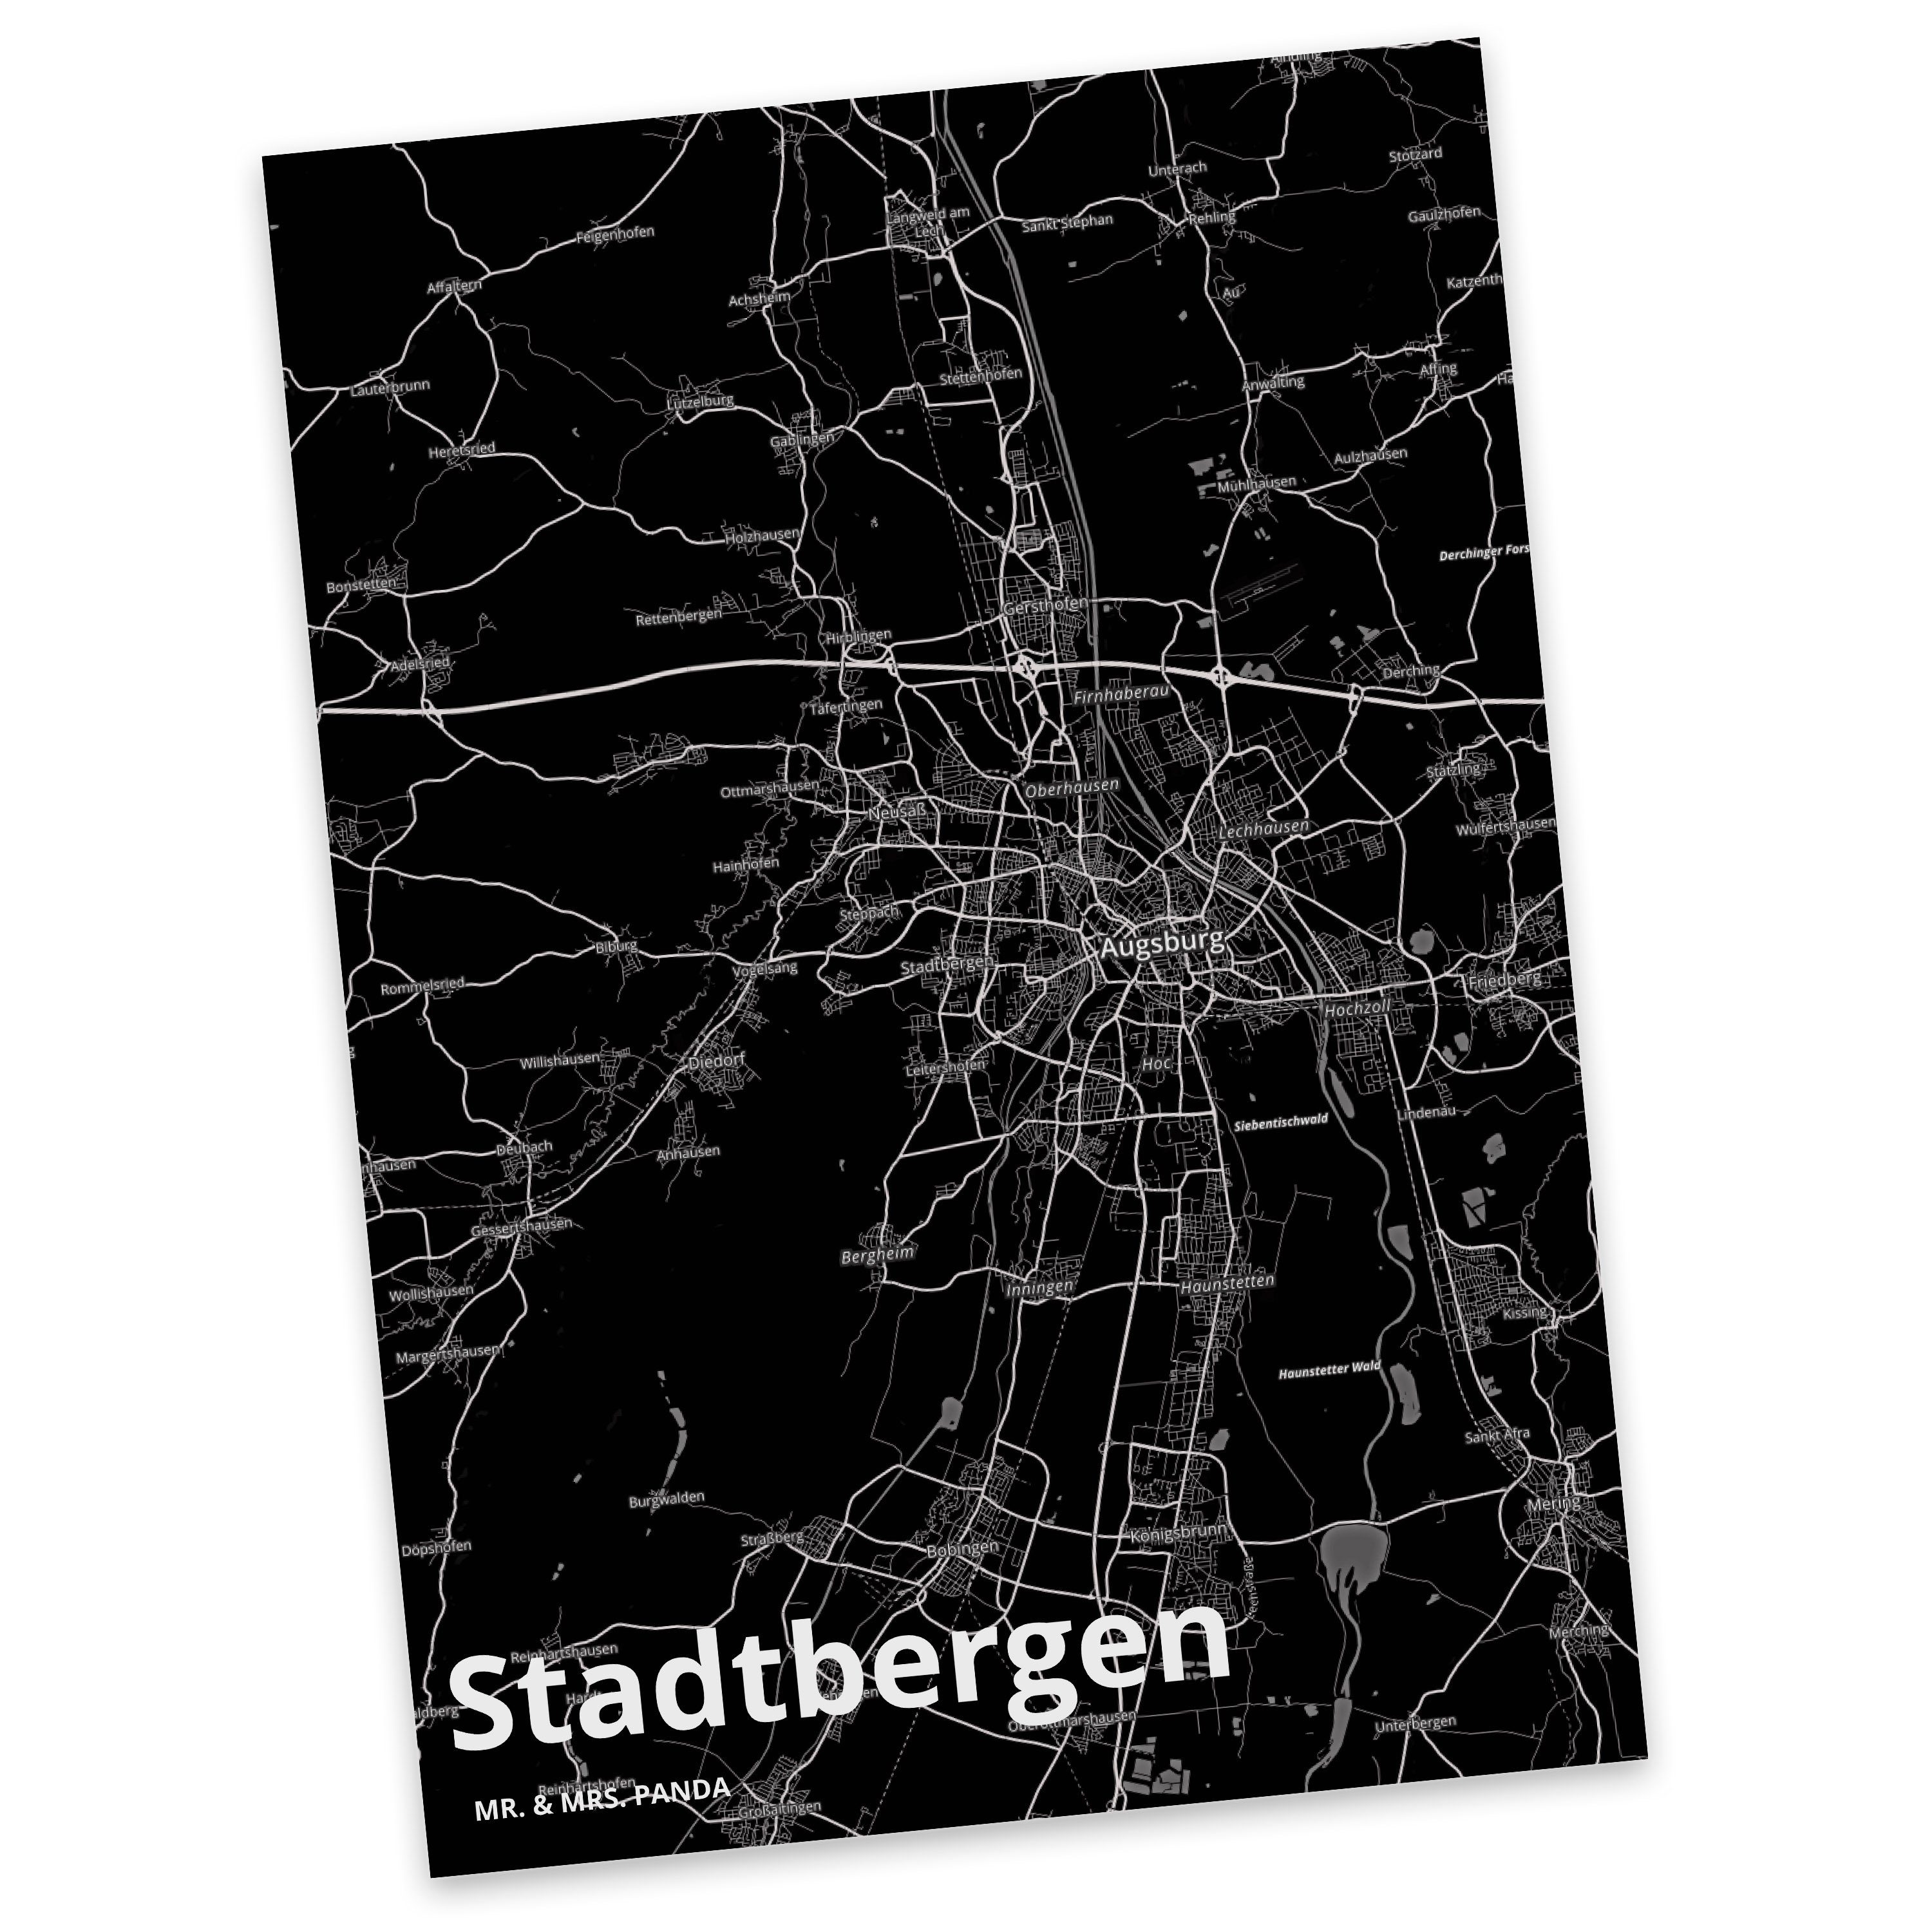 Mr. & Mrs. Panda Postkarte Stadtbergen - Geschenk, Stadt Dorf Karte Landkarte Map Stadtplan, Dor